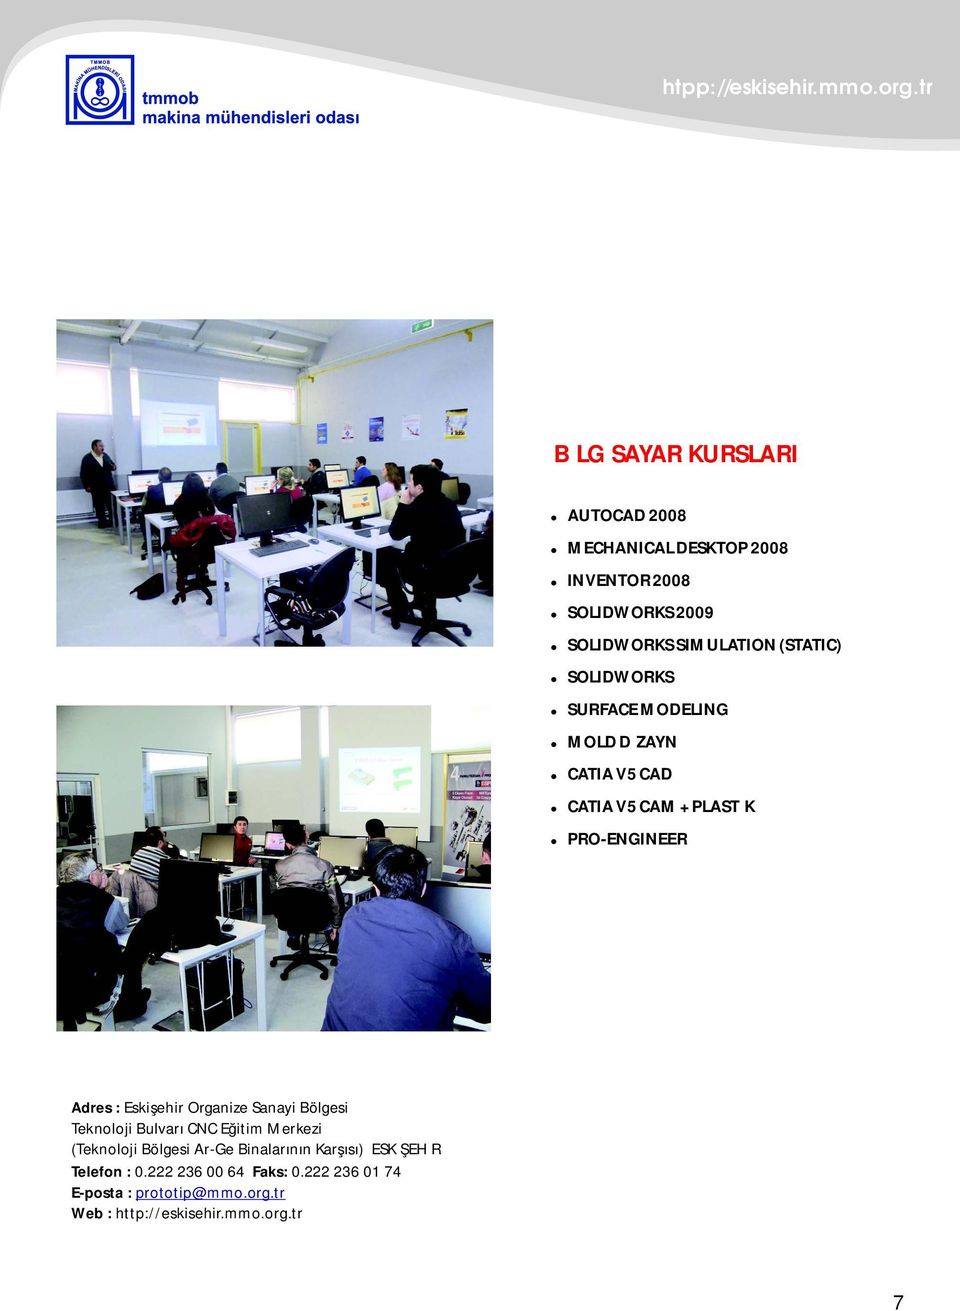 PRO-ENGINEER Adres : Eskişehir Organize Sanayi Bölgesi Teknoloji Bulvarı CNC Eğitim Merkezi (Teknoloji